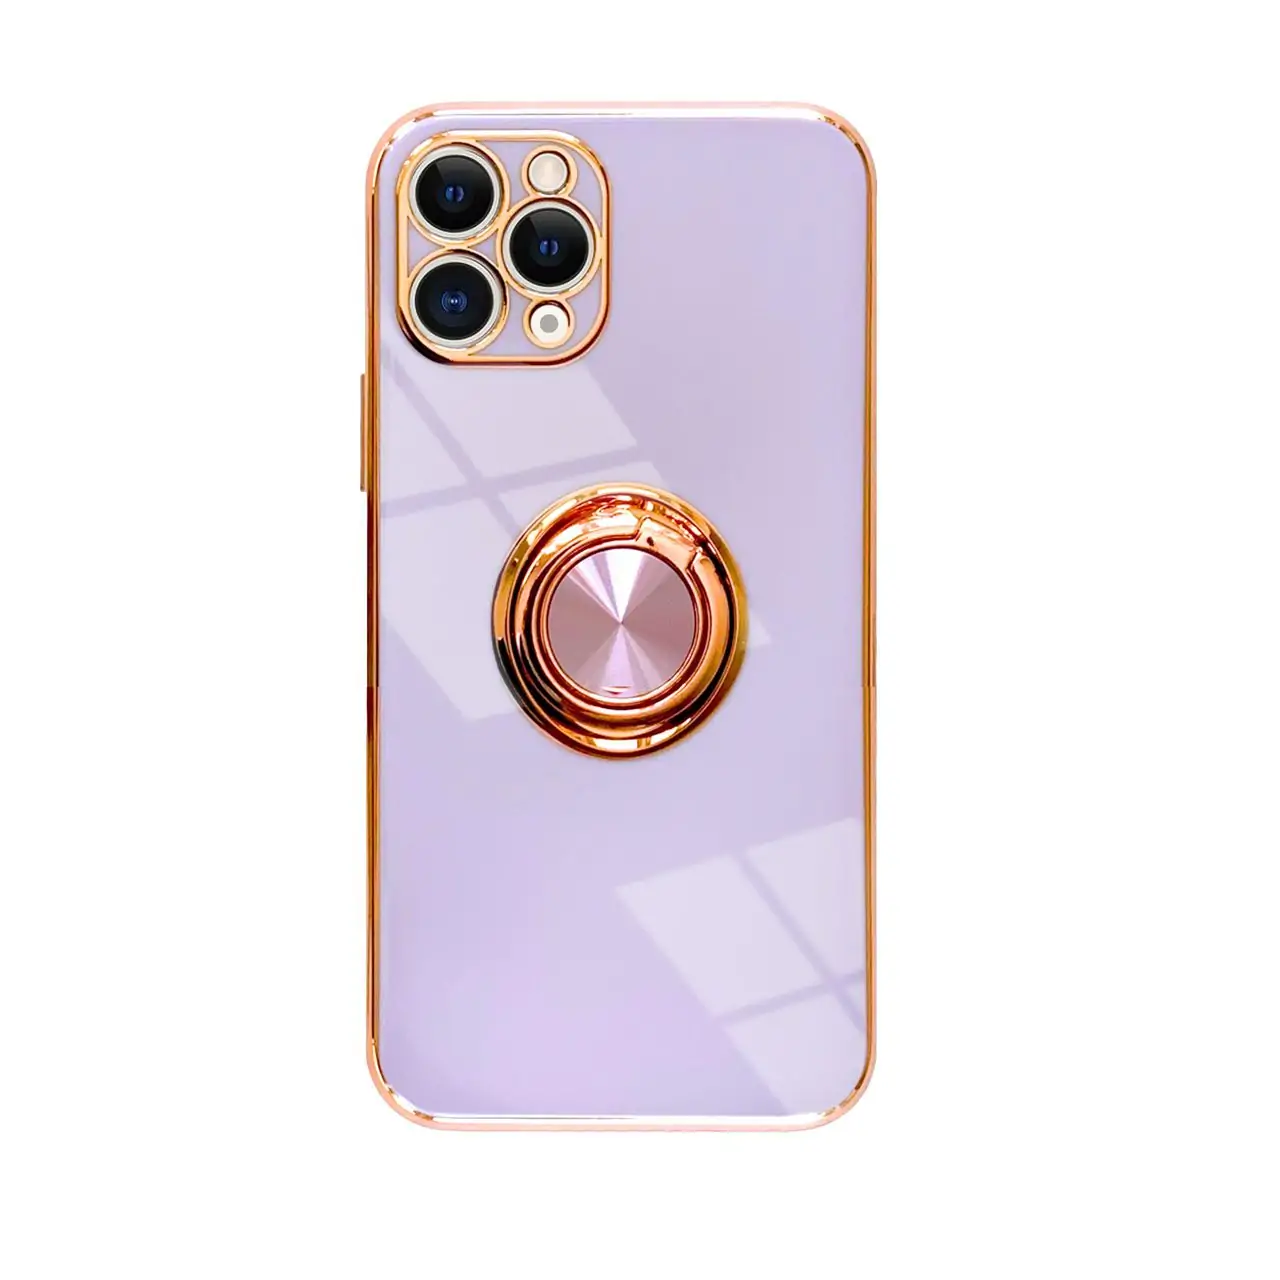 Etui do iPhone 12 Pro eleganckie, ze złotym, metalowym uchwytem i zdobieniami, bez osłony na aparat, fioletowe liliowe